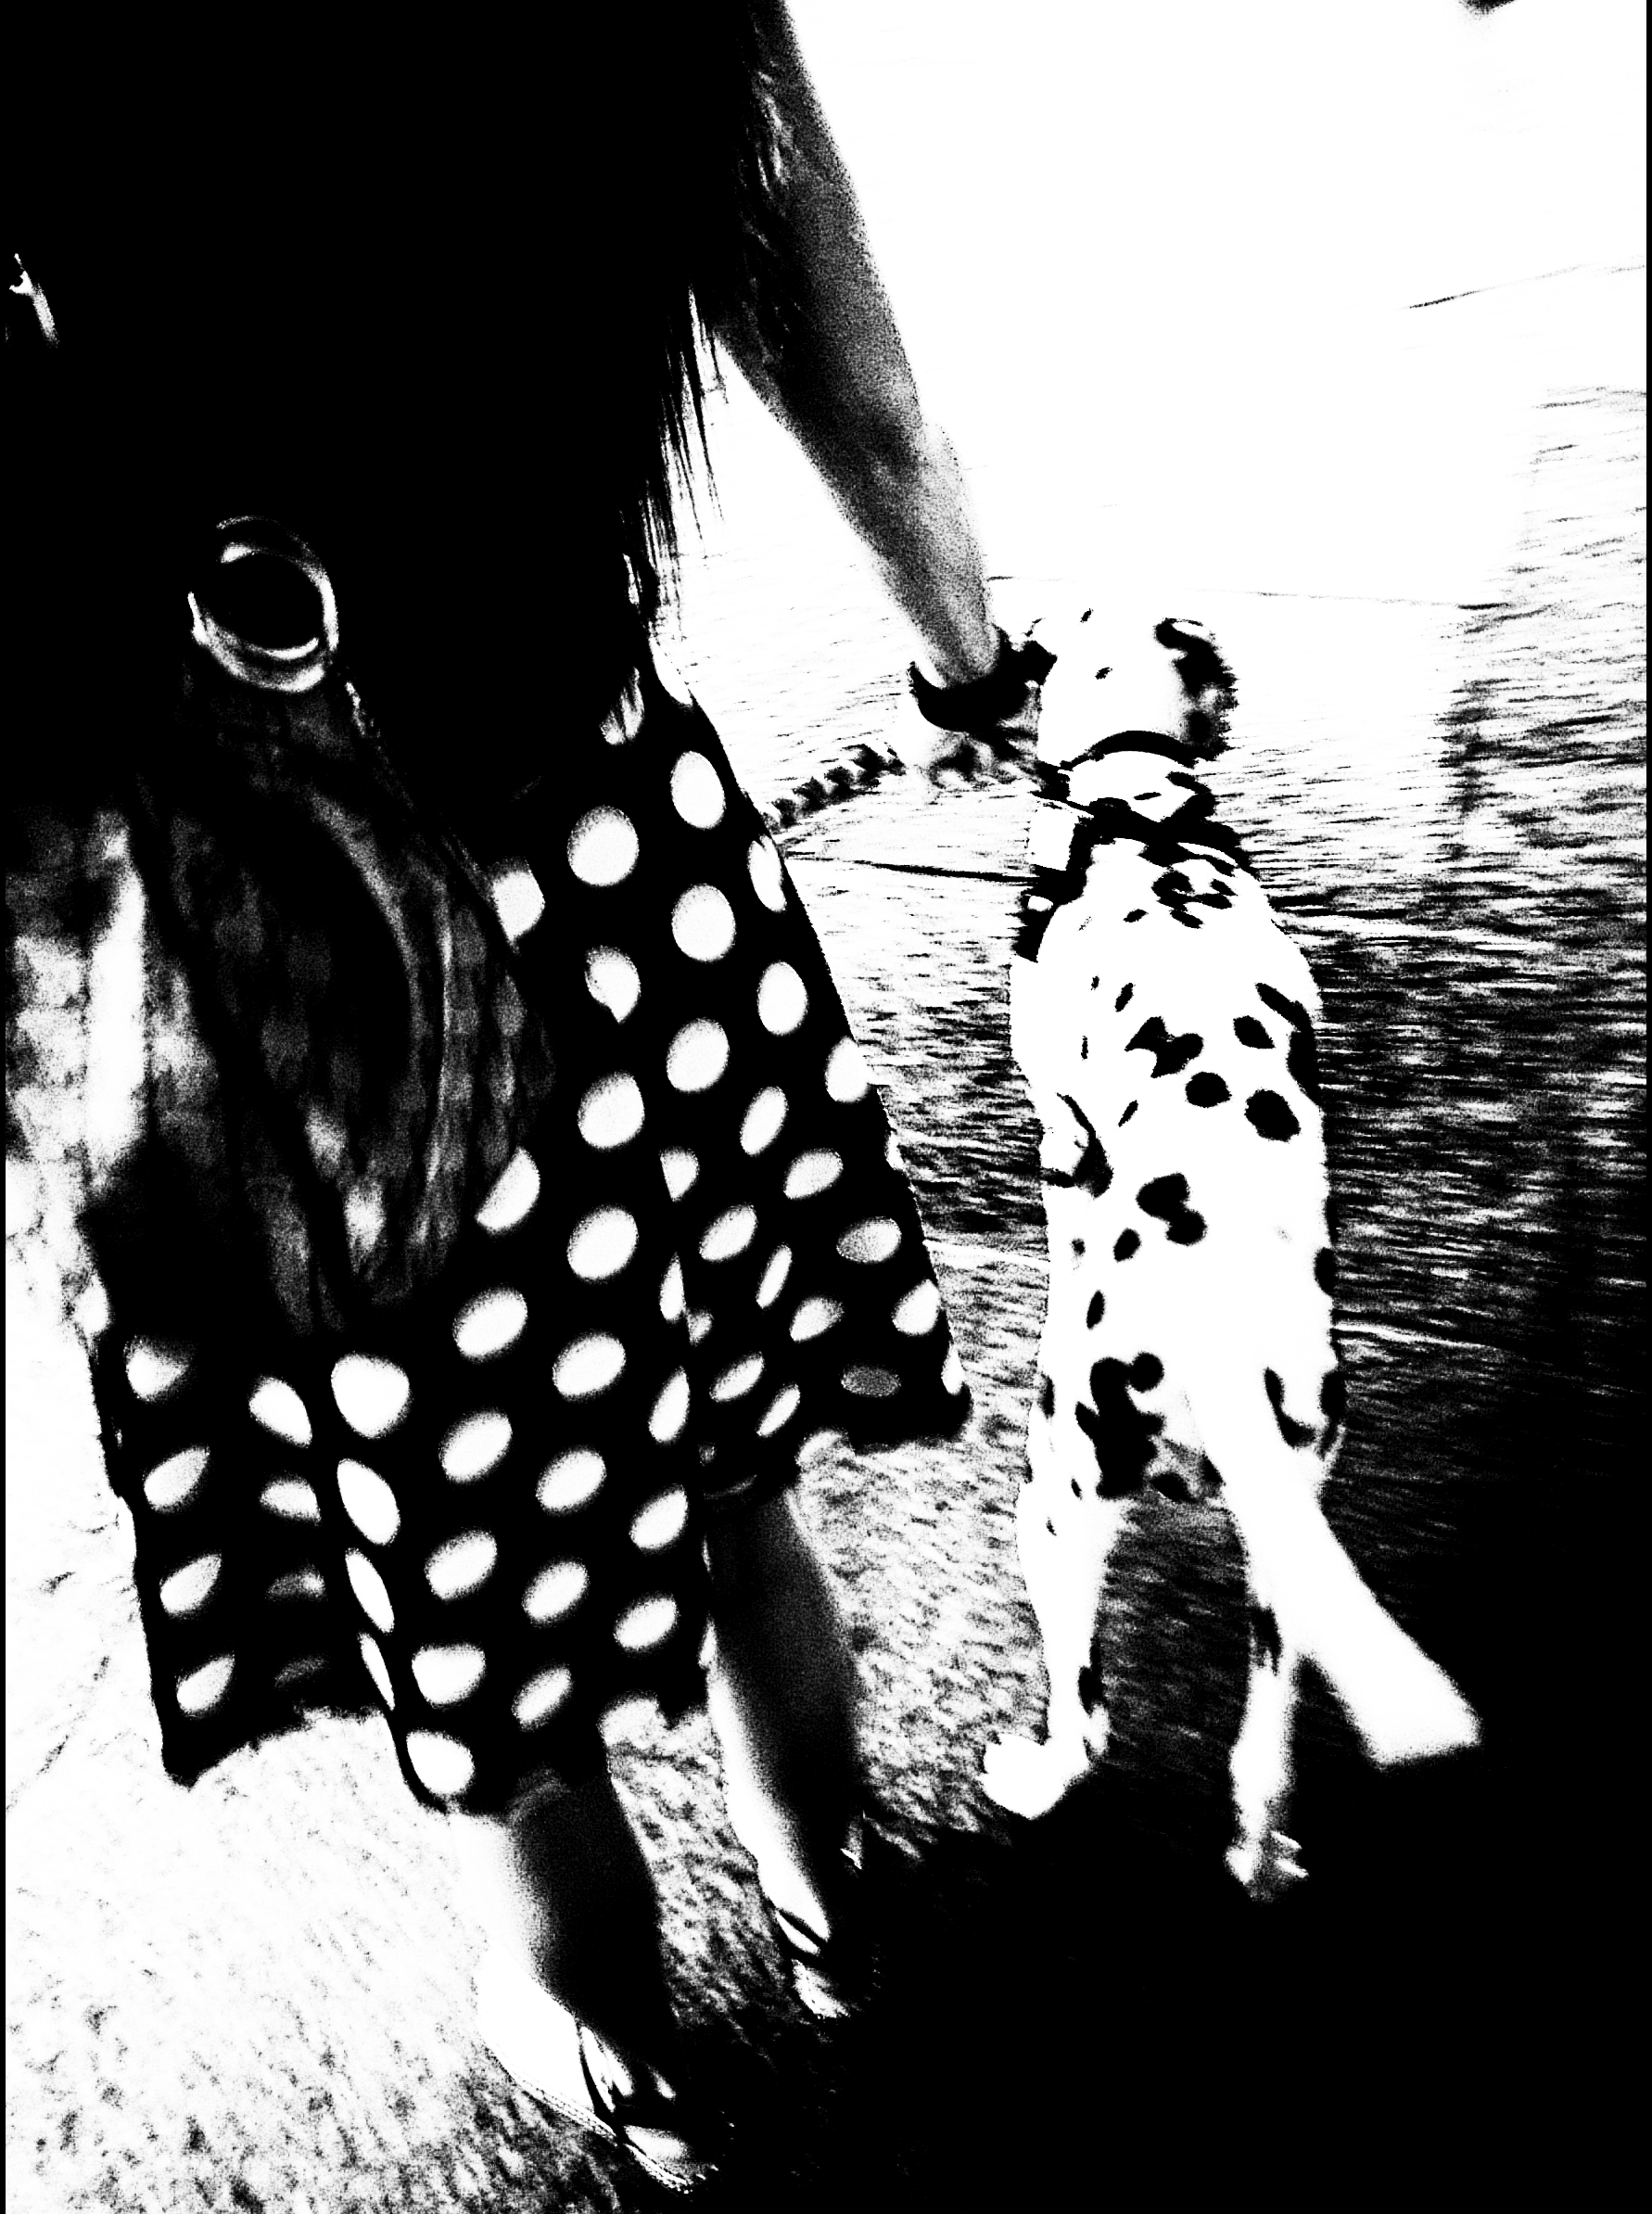 The polka-dot skirt...